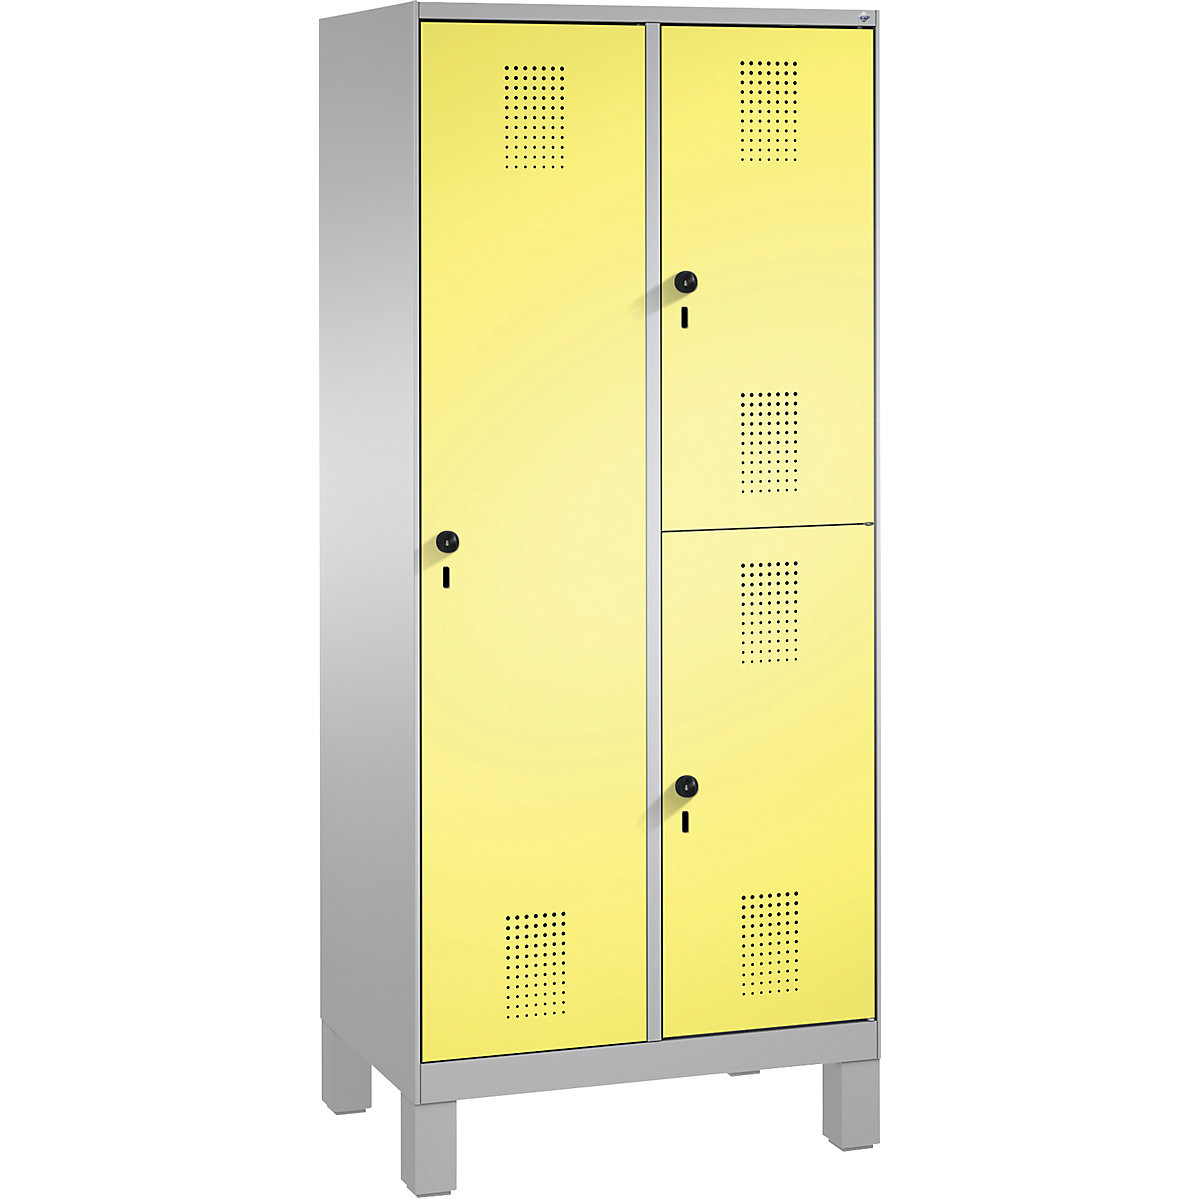 Kombinovaná skříň EVOLO, jednopatrová a dvoupatrová – C+P, 2 oddíly, 3 dveře, šířka oddílu 400 mm, s nohami, bílý hliník / sírová žlutá-17